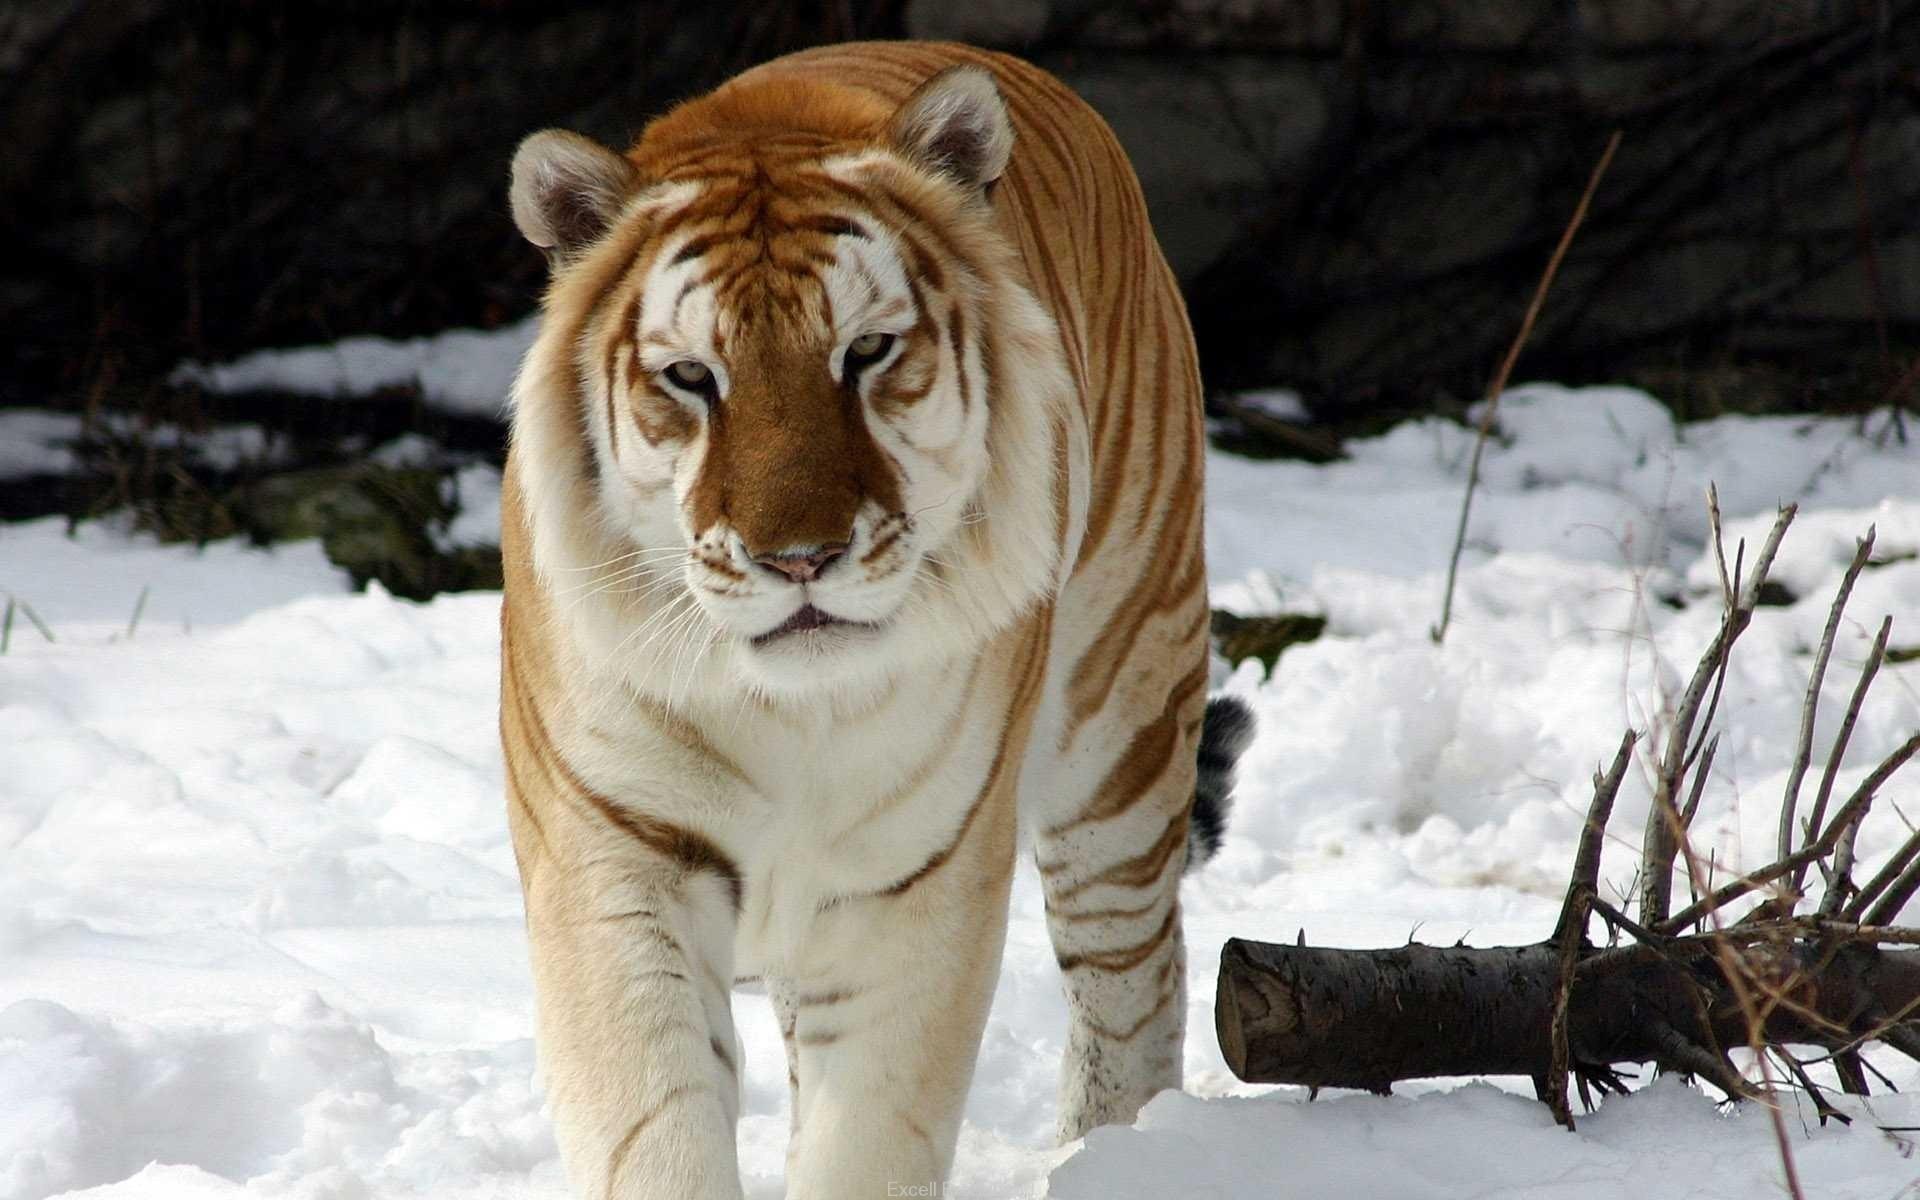 Обои на рабочий стол Амурский тигр идет зимой под падающим снегом, фотограф  Олег Богданов, обои для рабочего стола, скачать обои, обои бесплатно